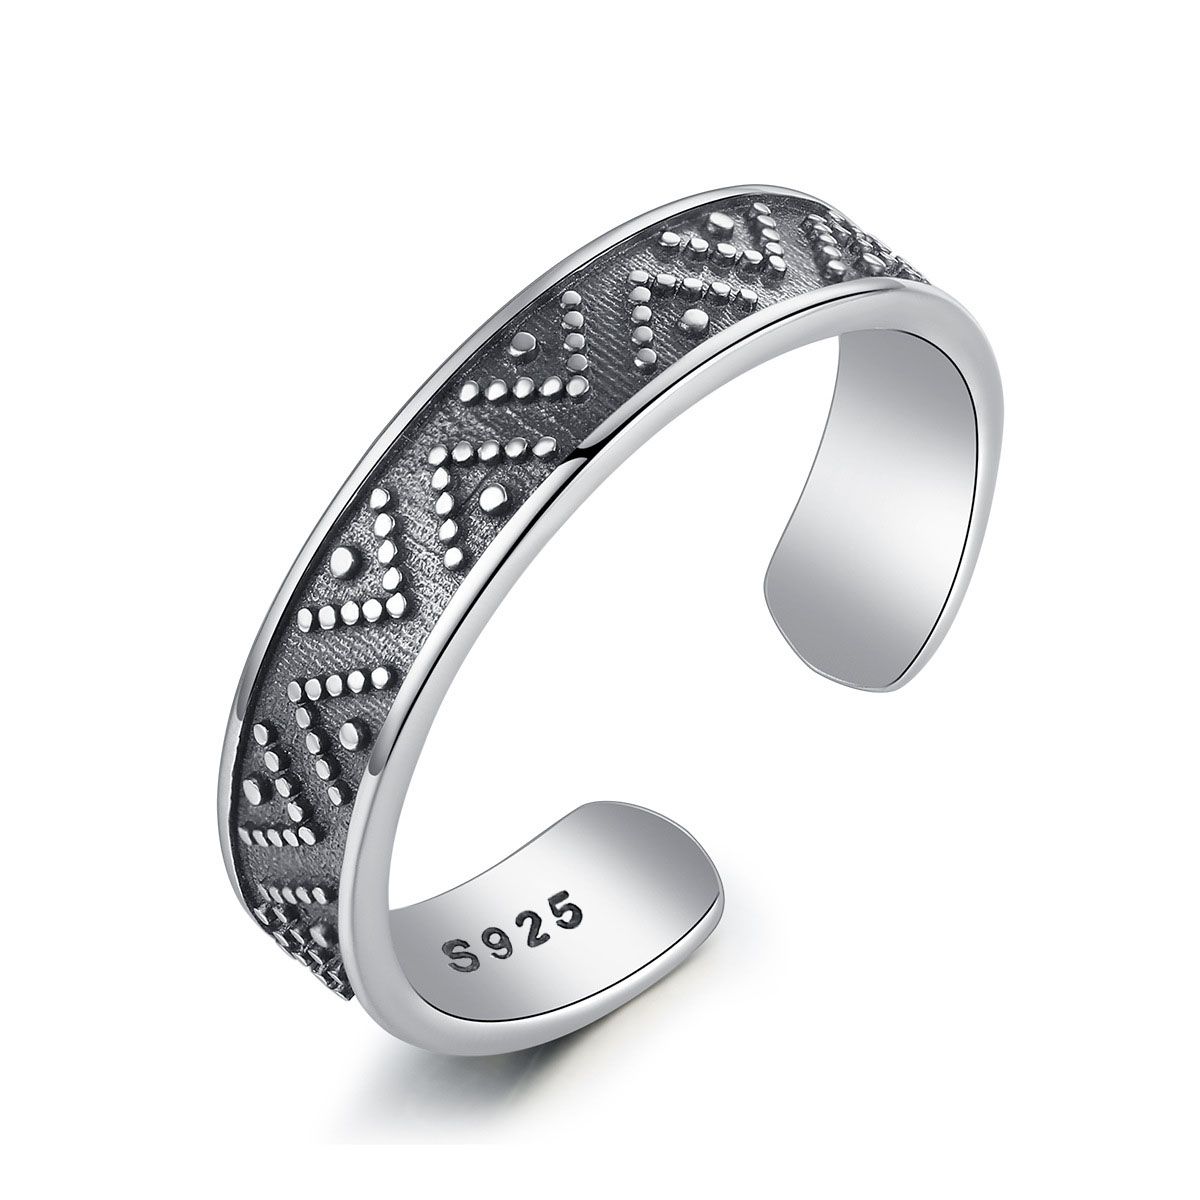 Bali Design 925 Sterling anillo de plata espirales cordel banda ancha de anillo señora caballero